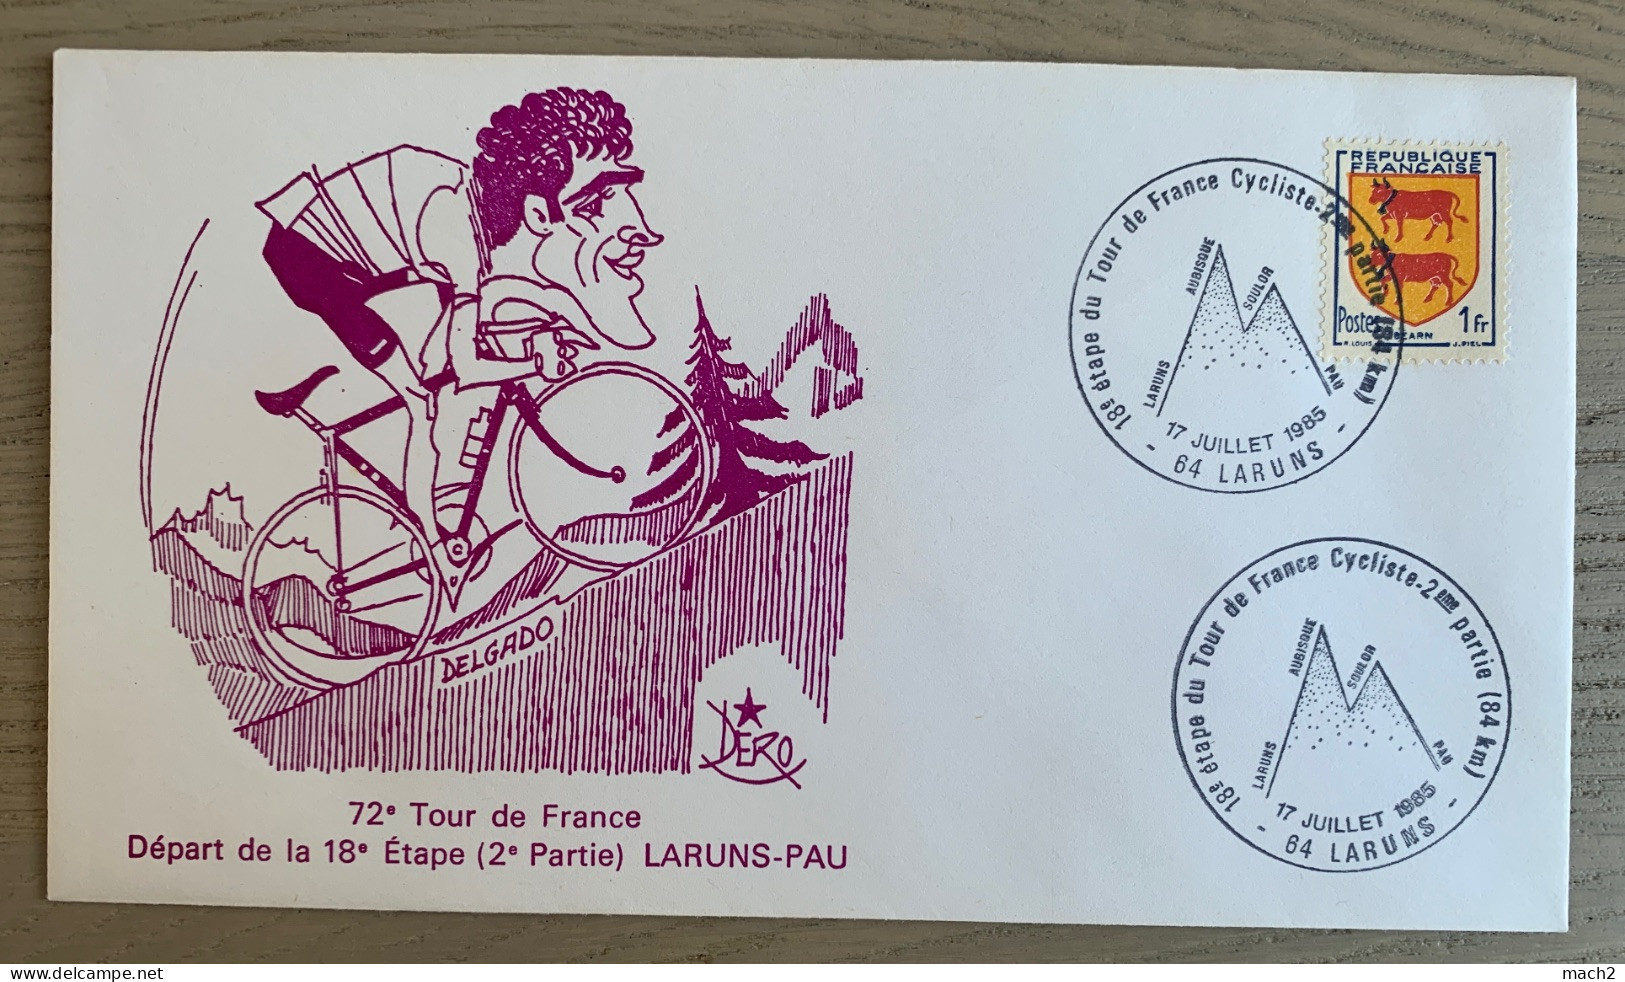 72ème Tour De France Cycliste 1985, 18ème étape, Cachet Illustré LARUNS 17/7/1985 DELGADO - Ciclismo